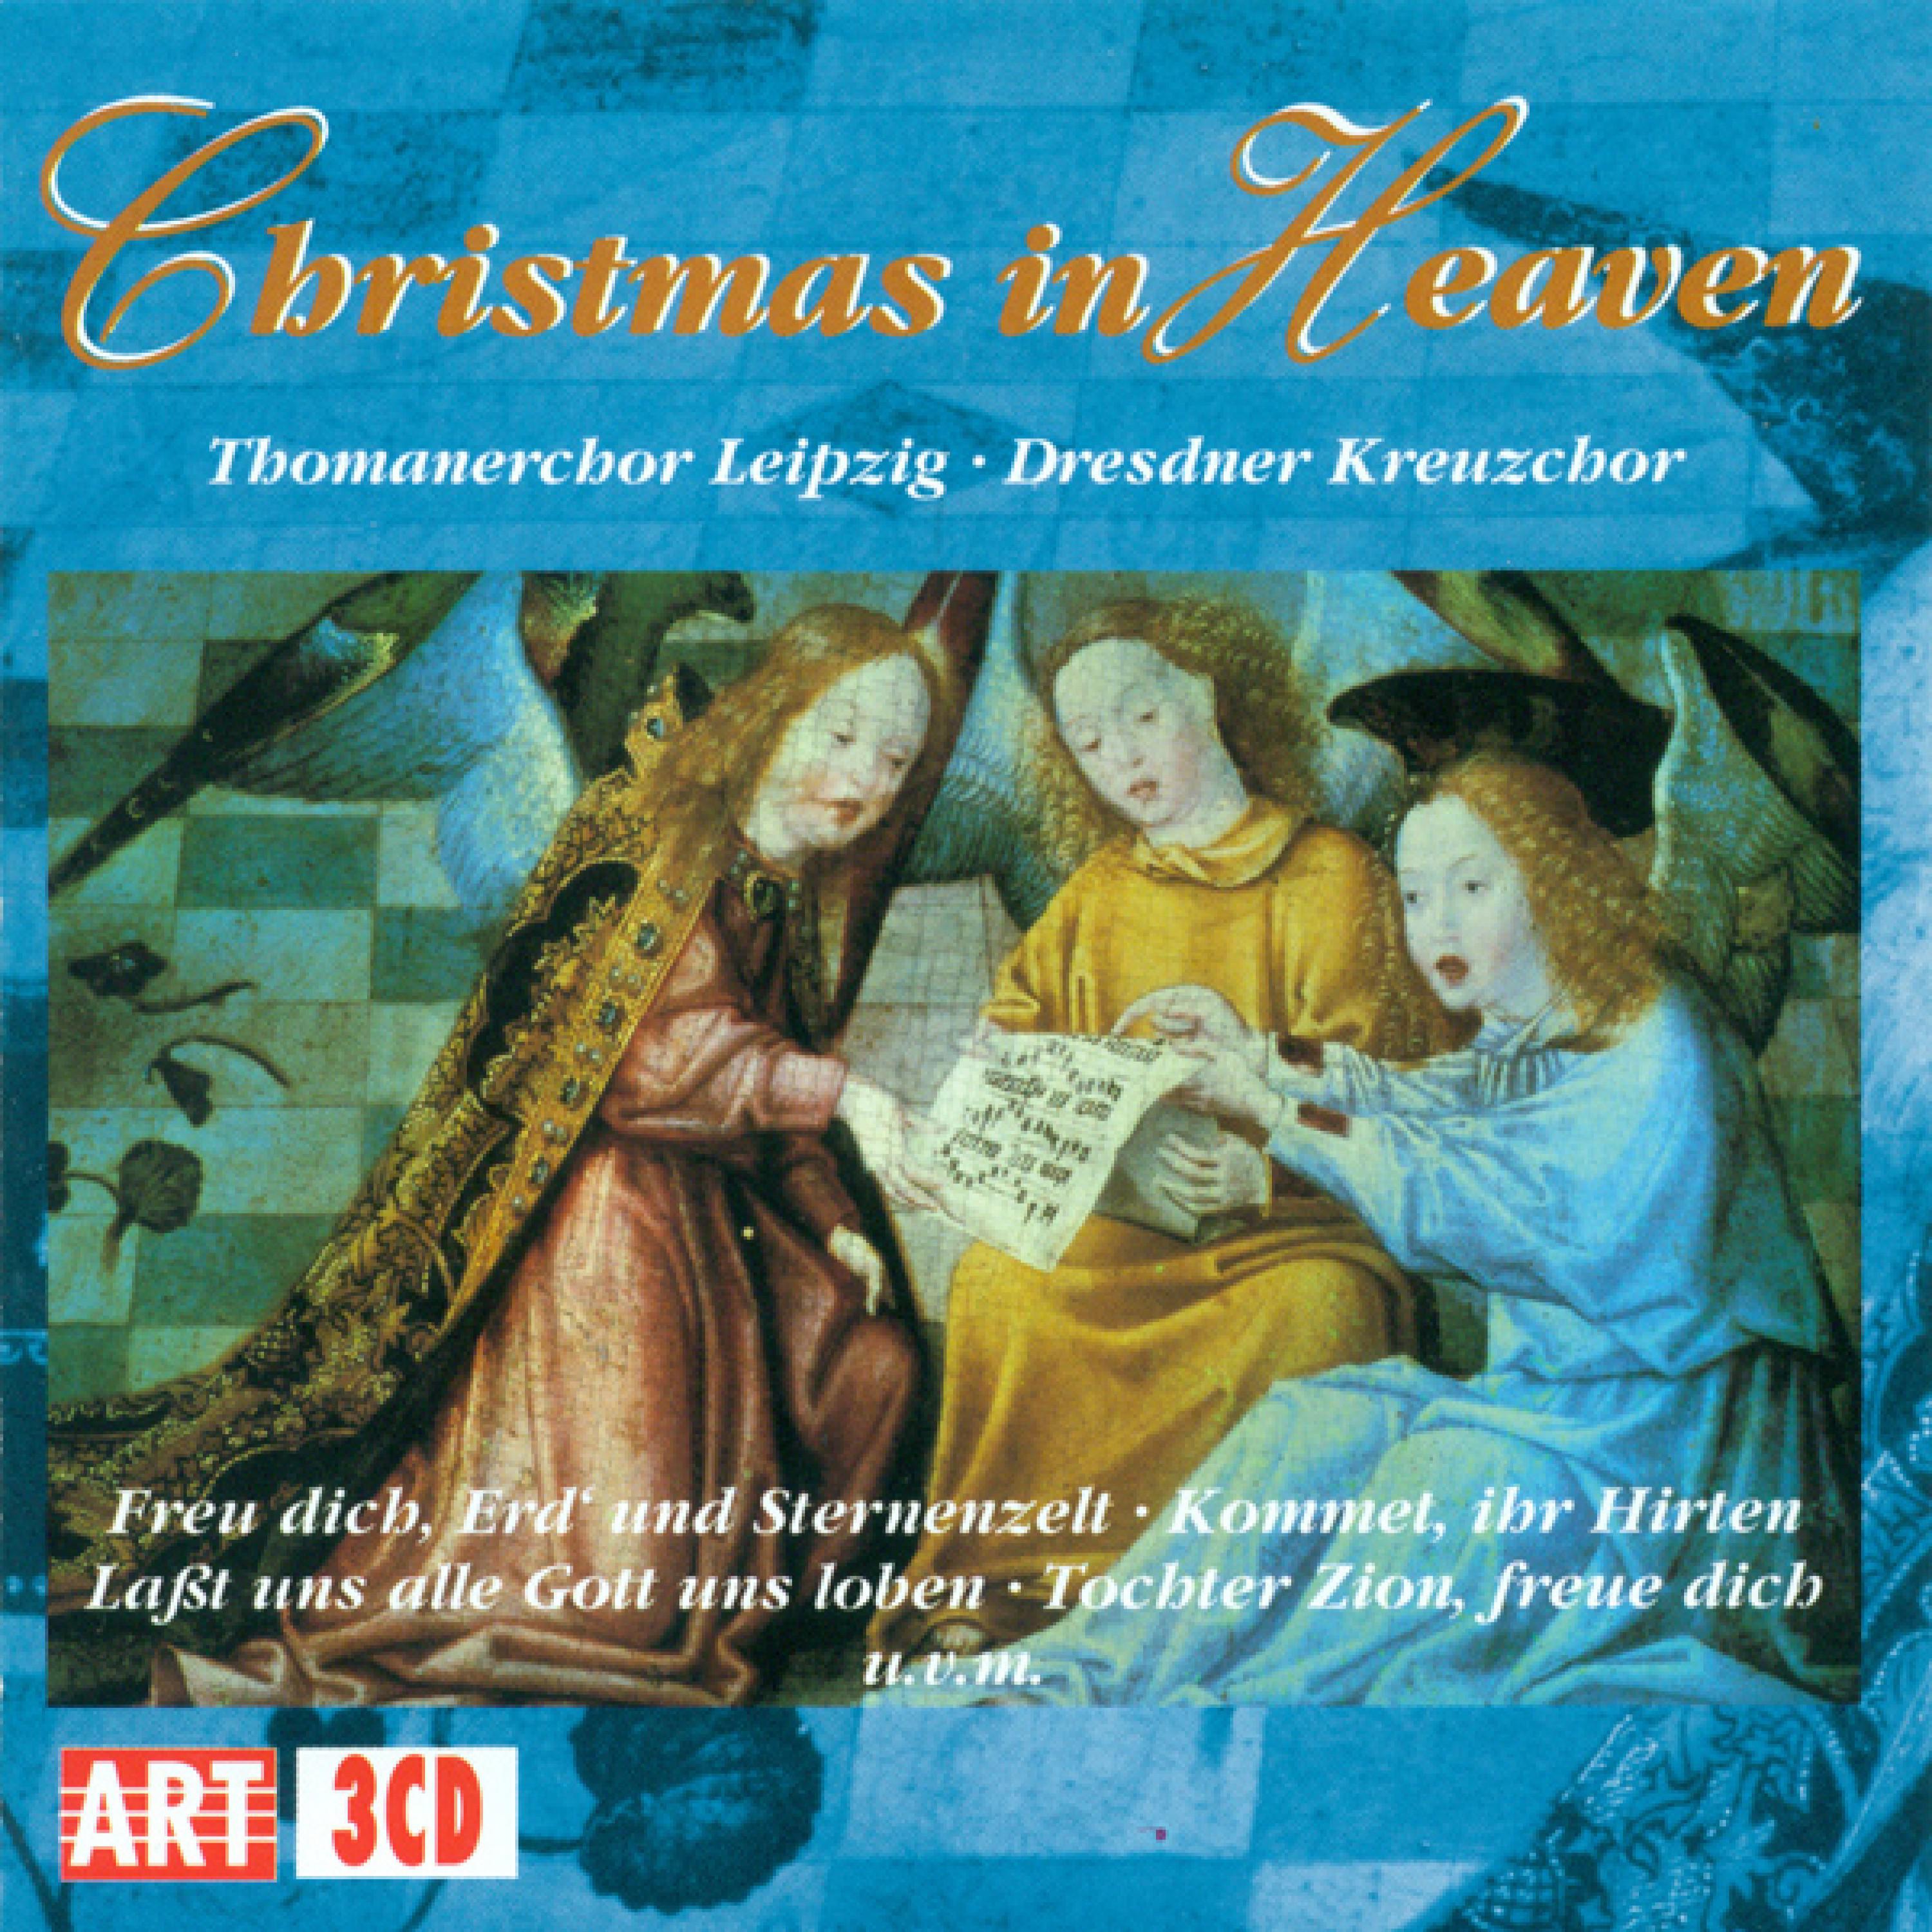 Weihnachtsoratorium, BWV 248, Teil IV "Am Feste der Beschneidung Christi": Fallt mit Danken, fallt mit Loben